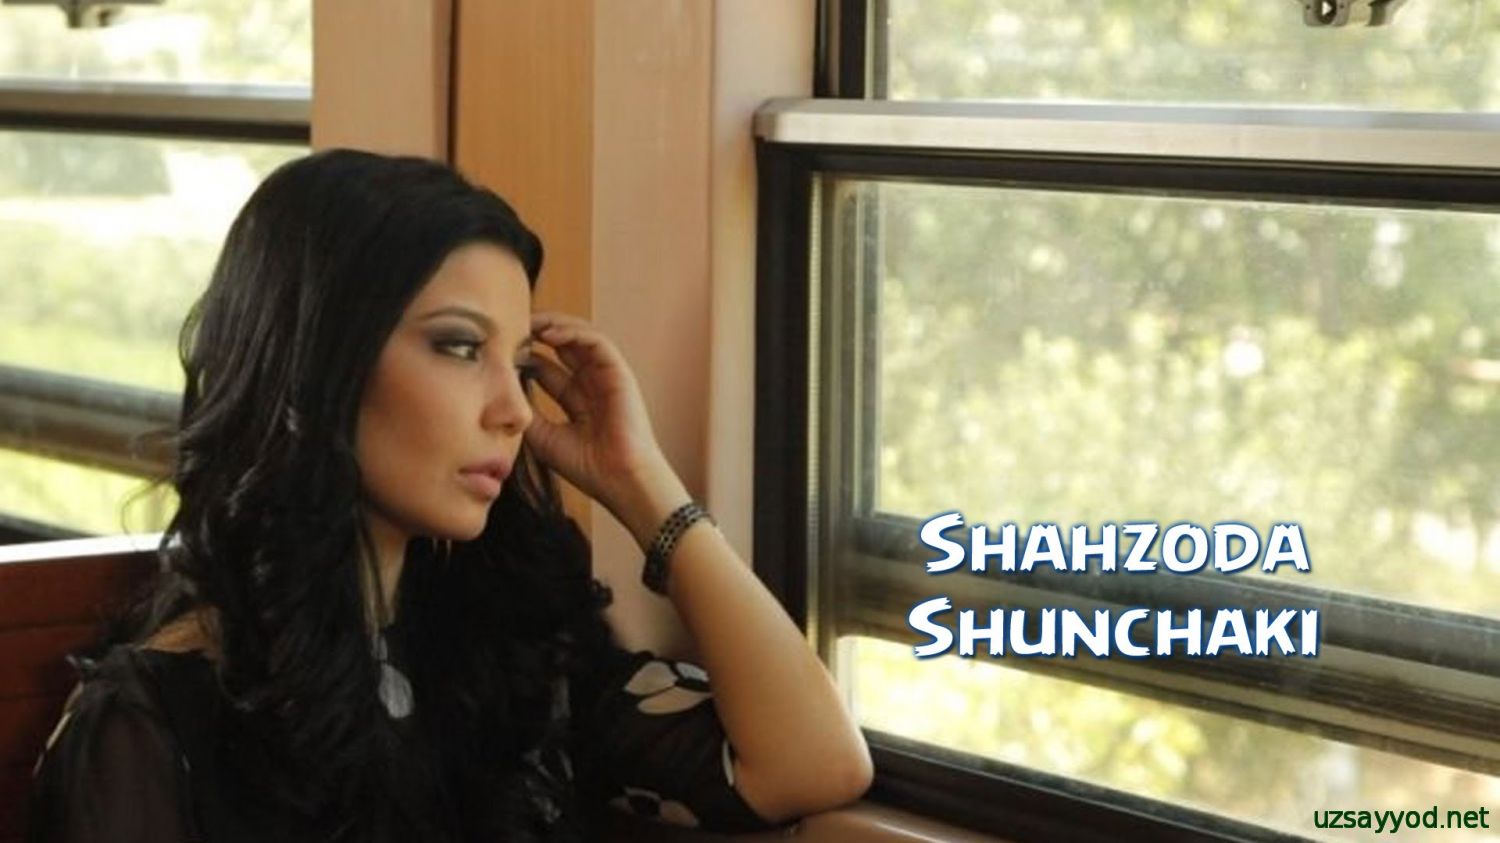 Shahzoda - Shunchaki (Yangi klip 2014)